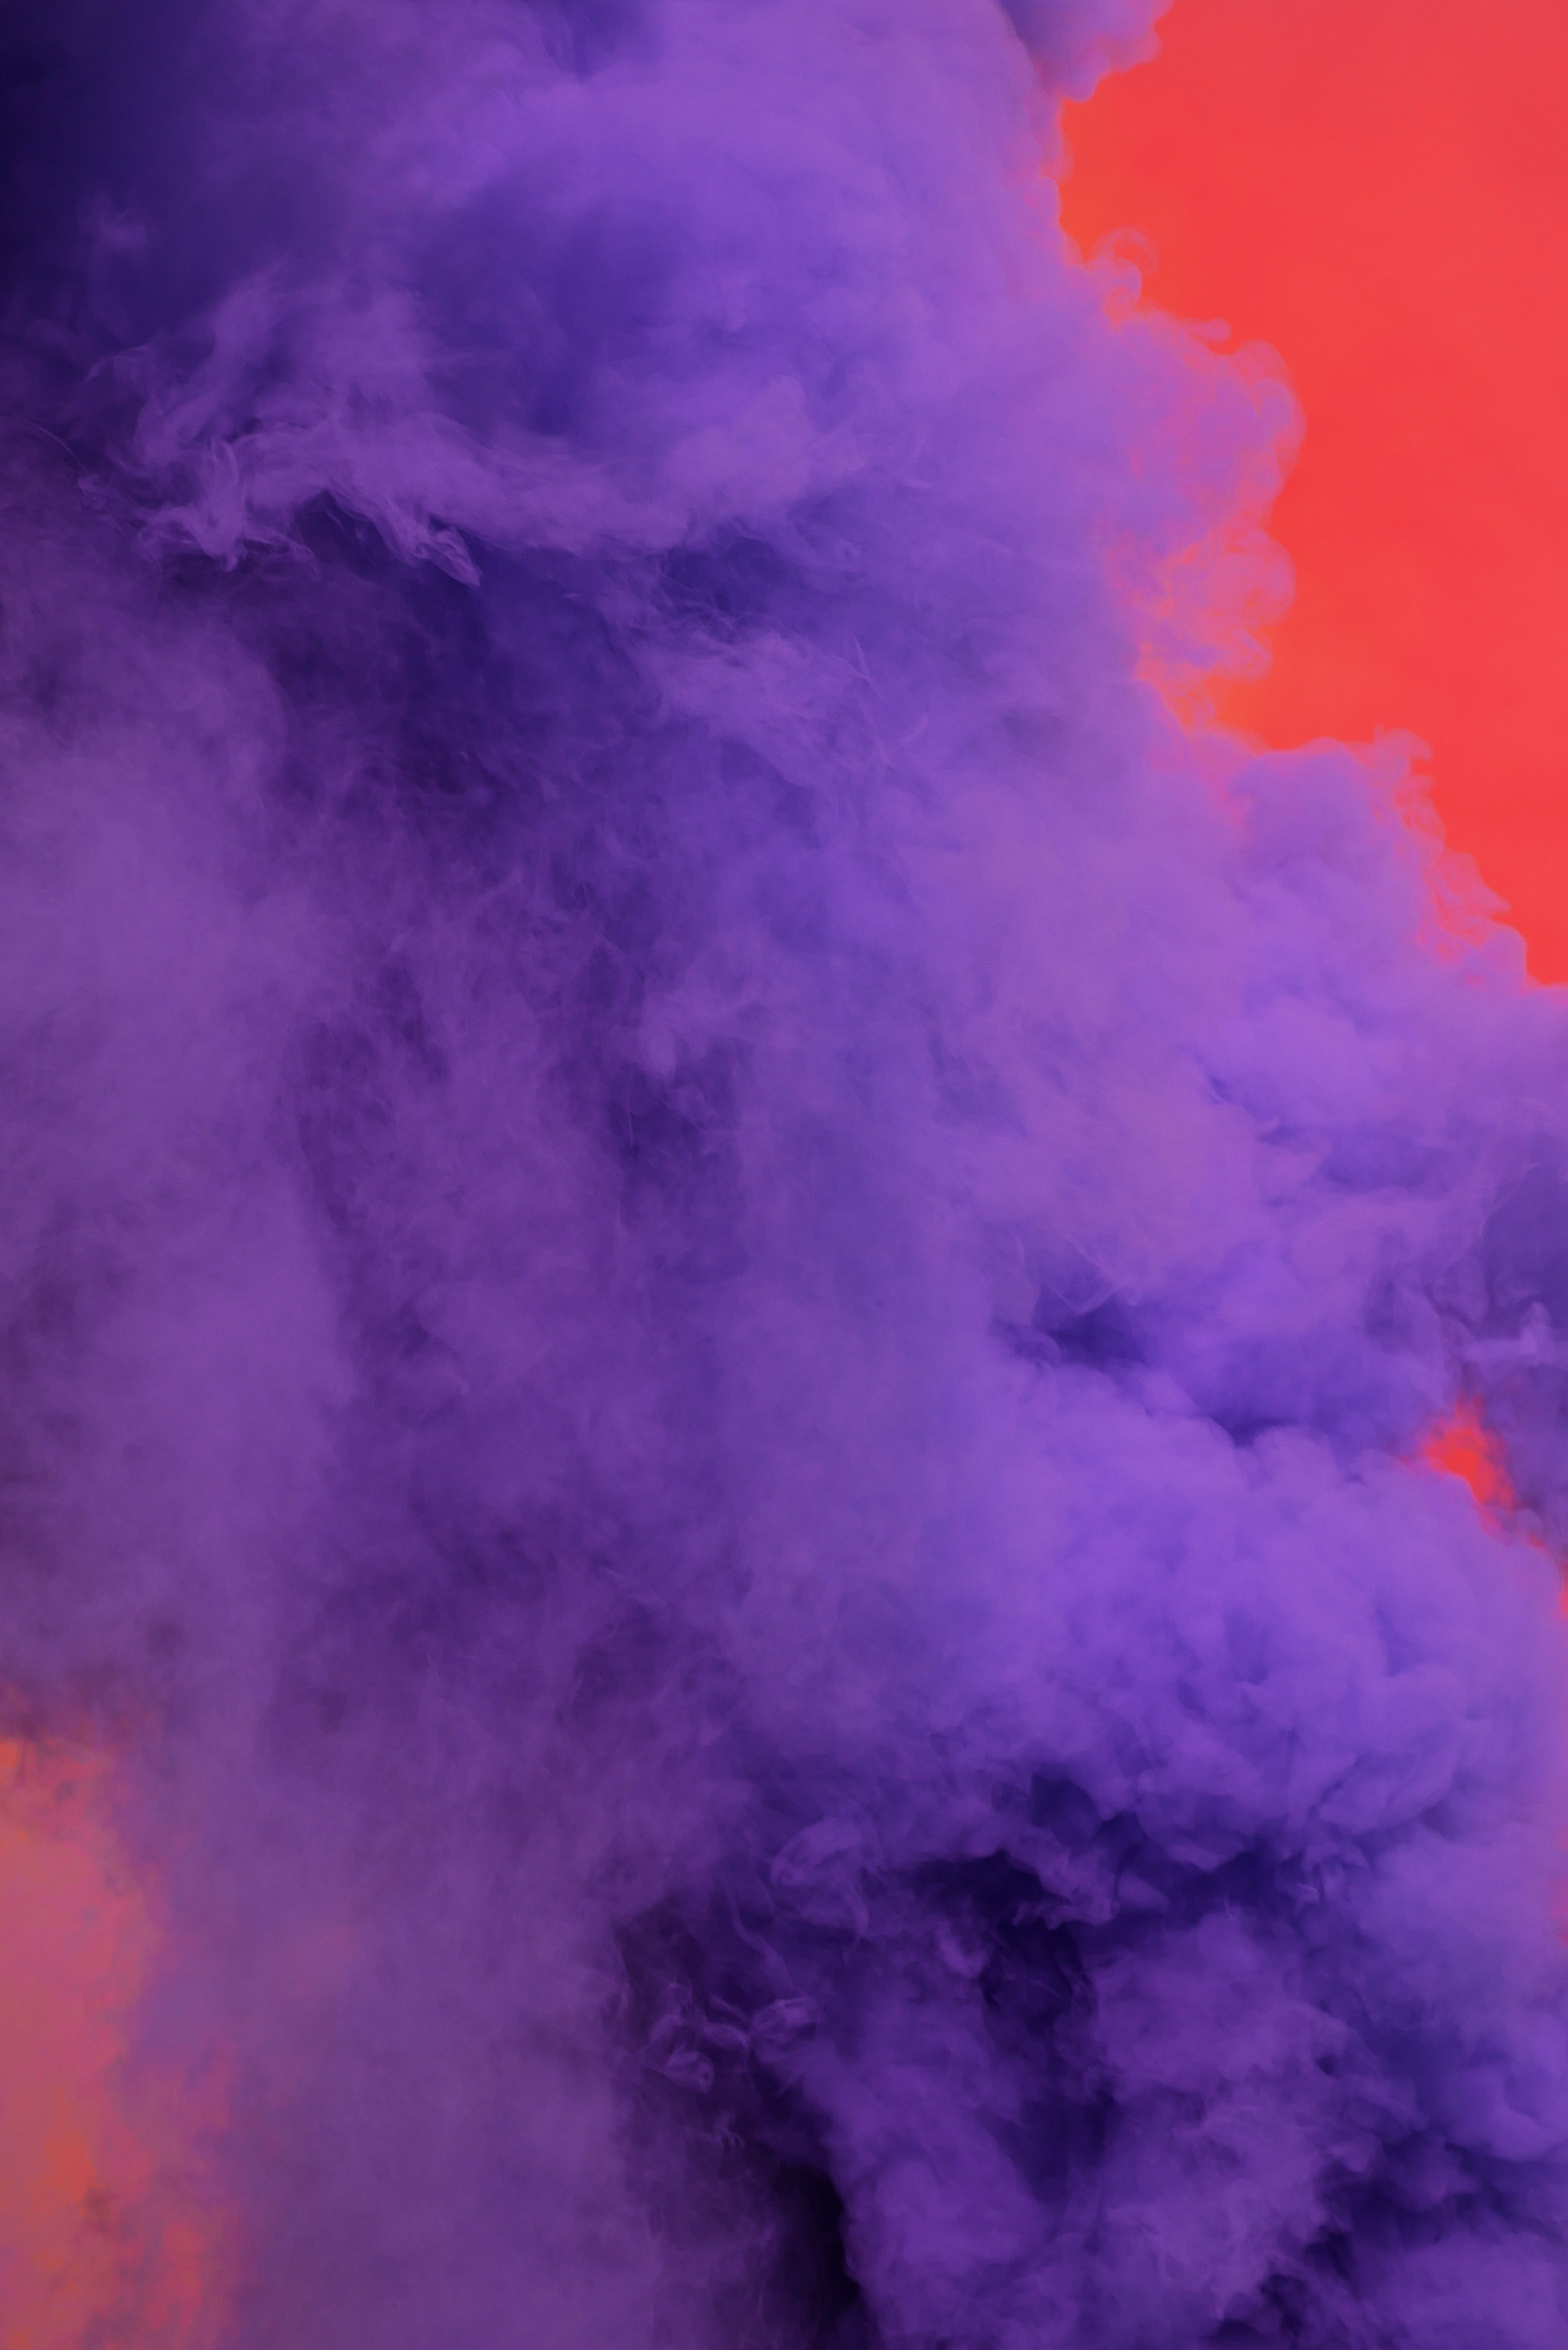 Ngày Wear It Purple 2022 sẽ mang đến cho bạn một ngày tuyệt vời để diện cho mình trang phục màu tím và phản ánh sự ủng hộ và tôn trọng đại diện cho cộng đồng LGBTIQ+. Hãy cùng khoe sắc cùng các bạn đồng màu để trang trí lại nền tảng của mình với những hình ảnh đầy ý nghĩa!